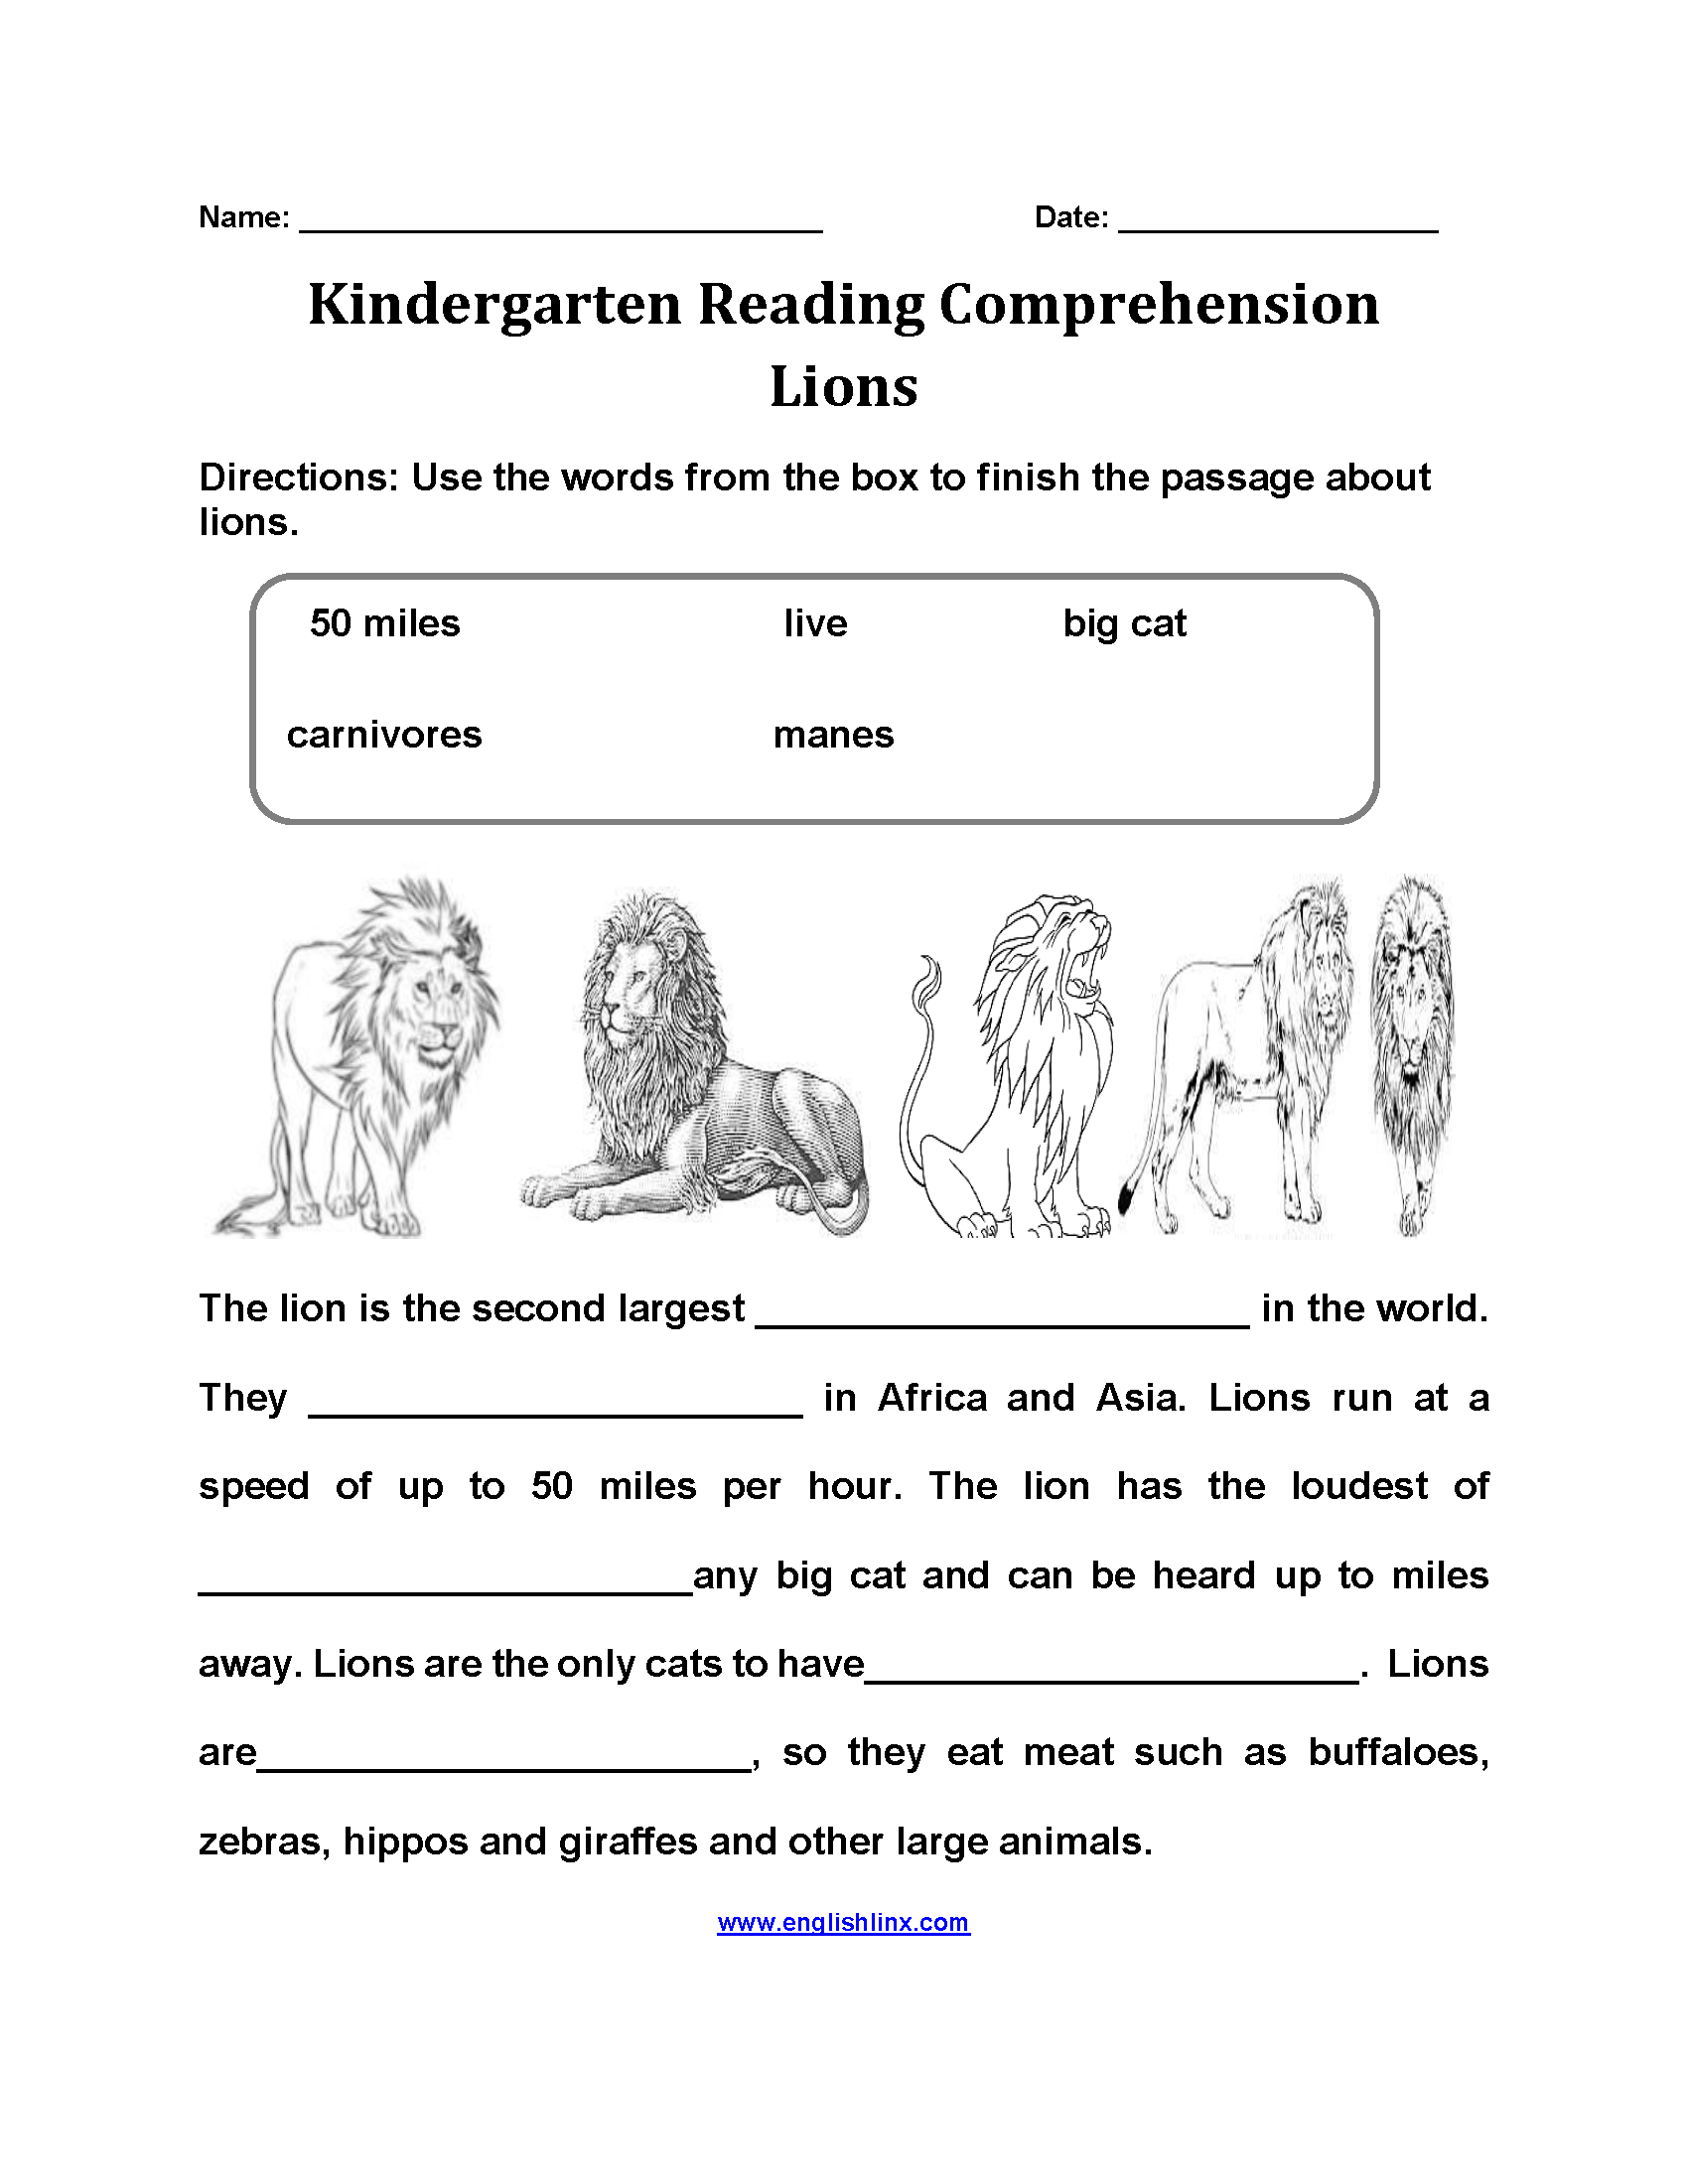 Lions Kindergarten Reading Comprehension Worksheets